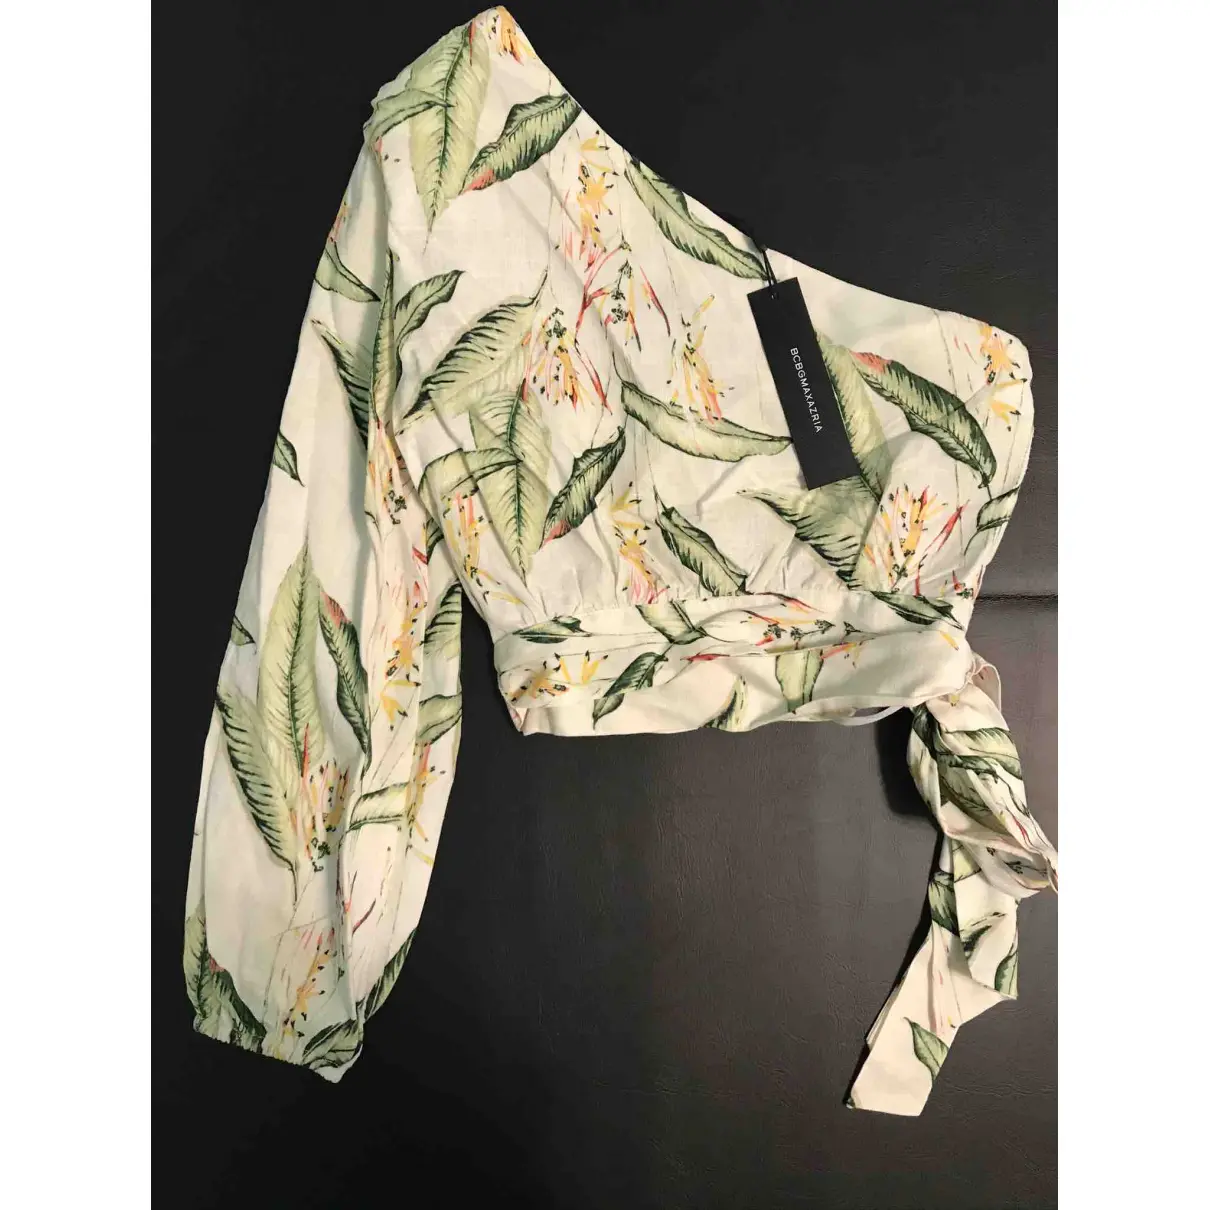 Buy Bcbg Max Azria Linen blouse online